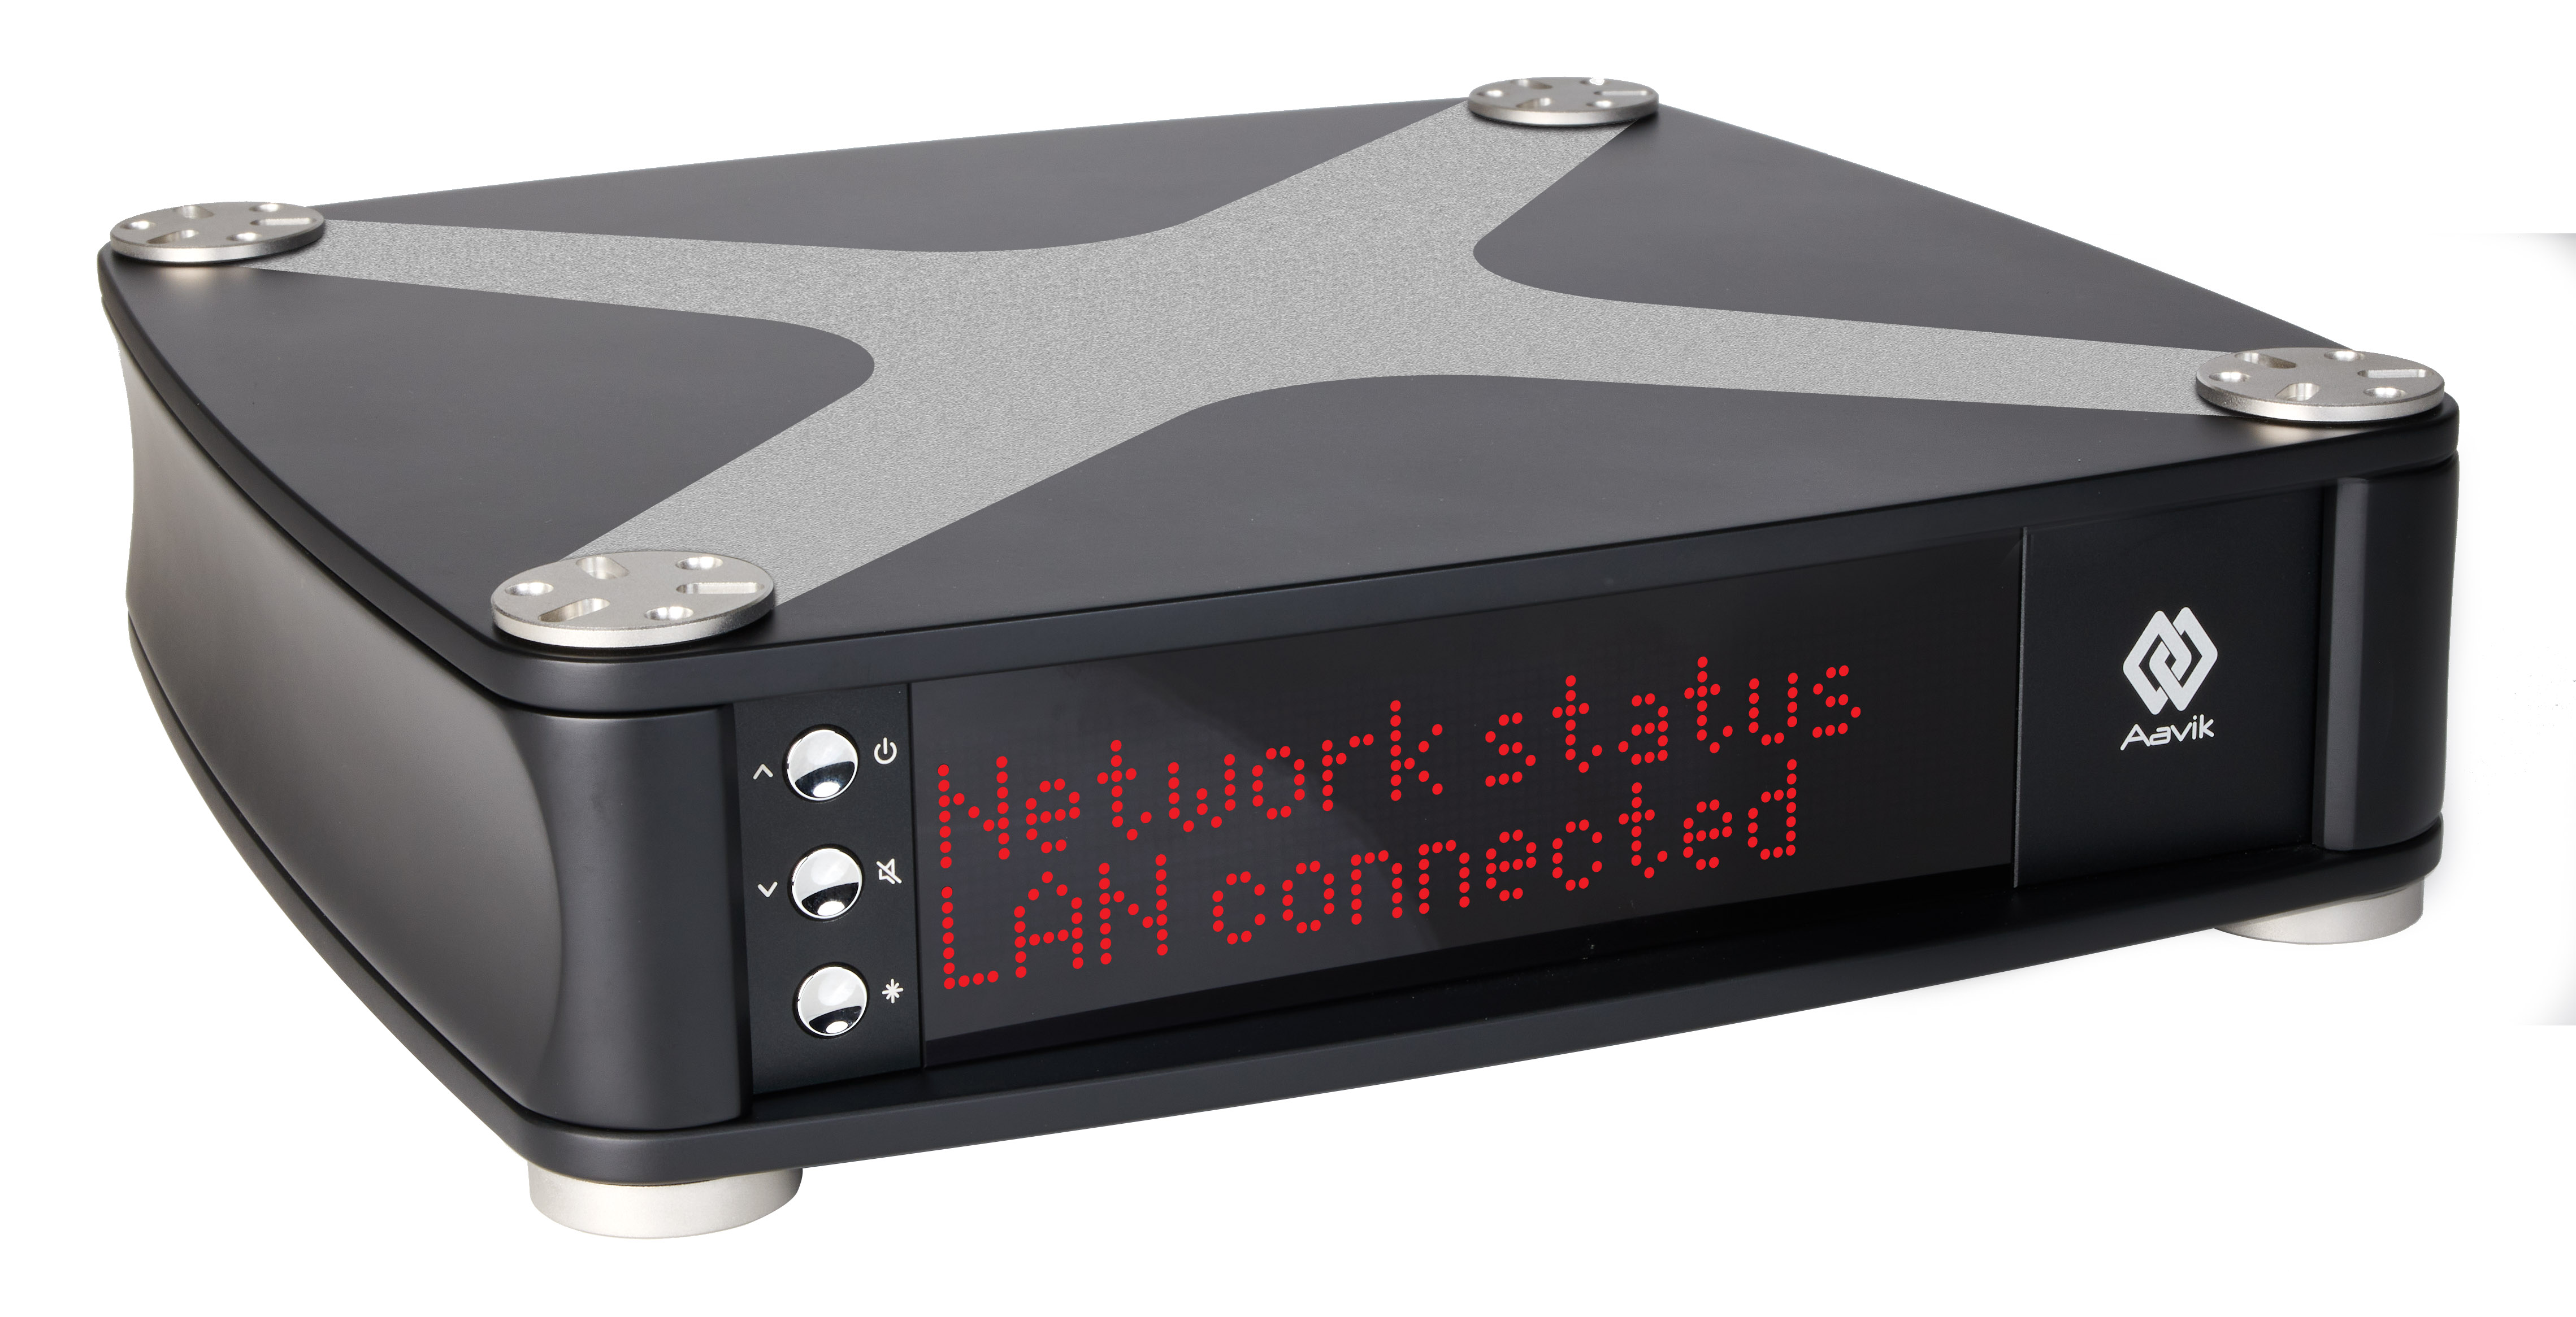 Aavik S-580 Streamer / Netzwerkplayer